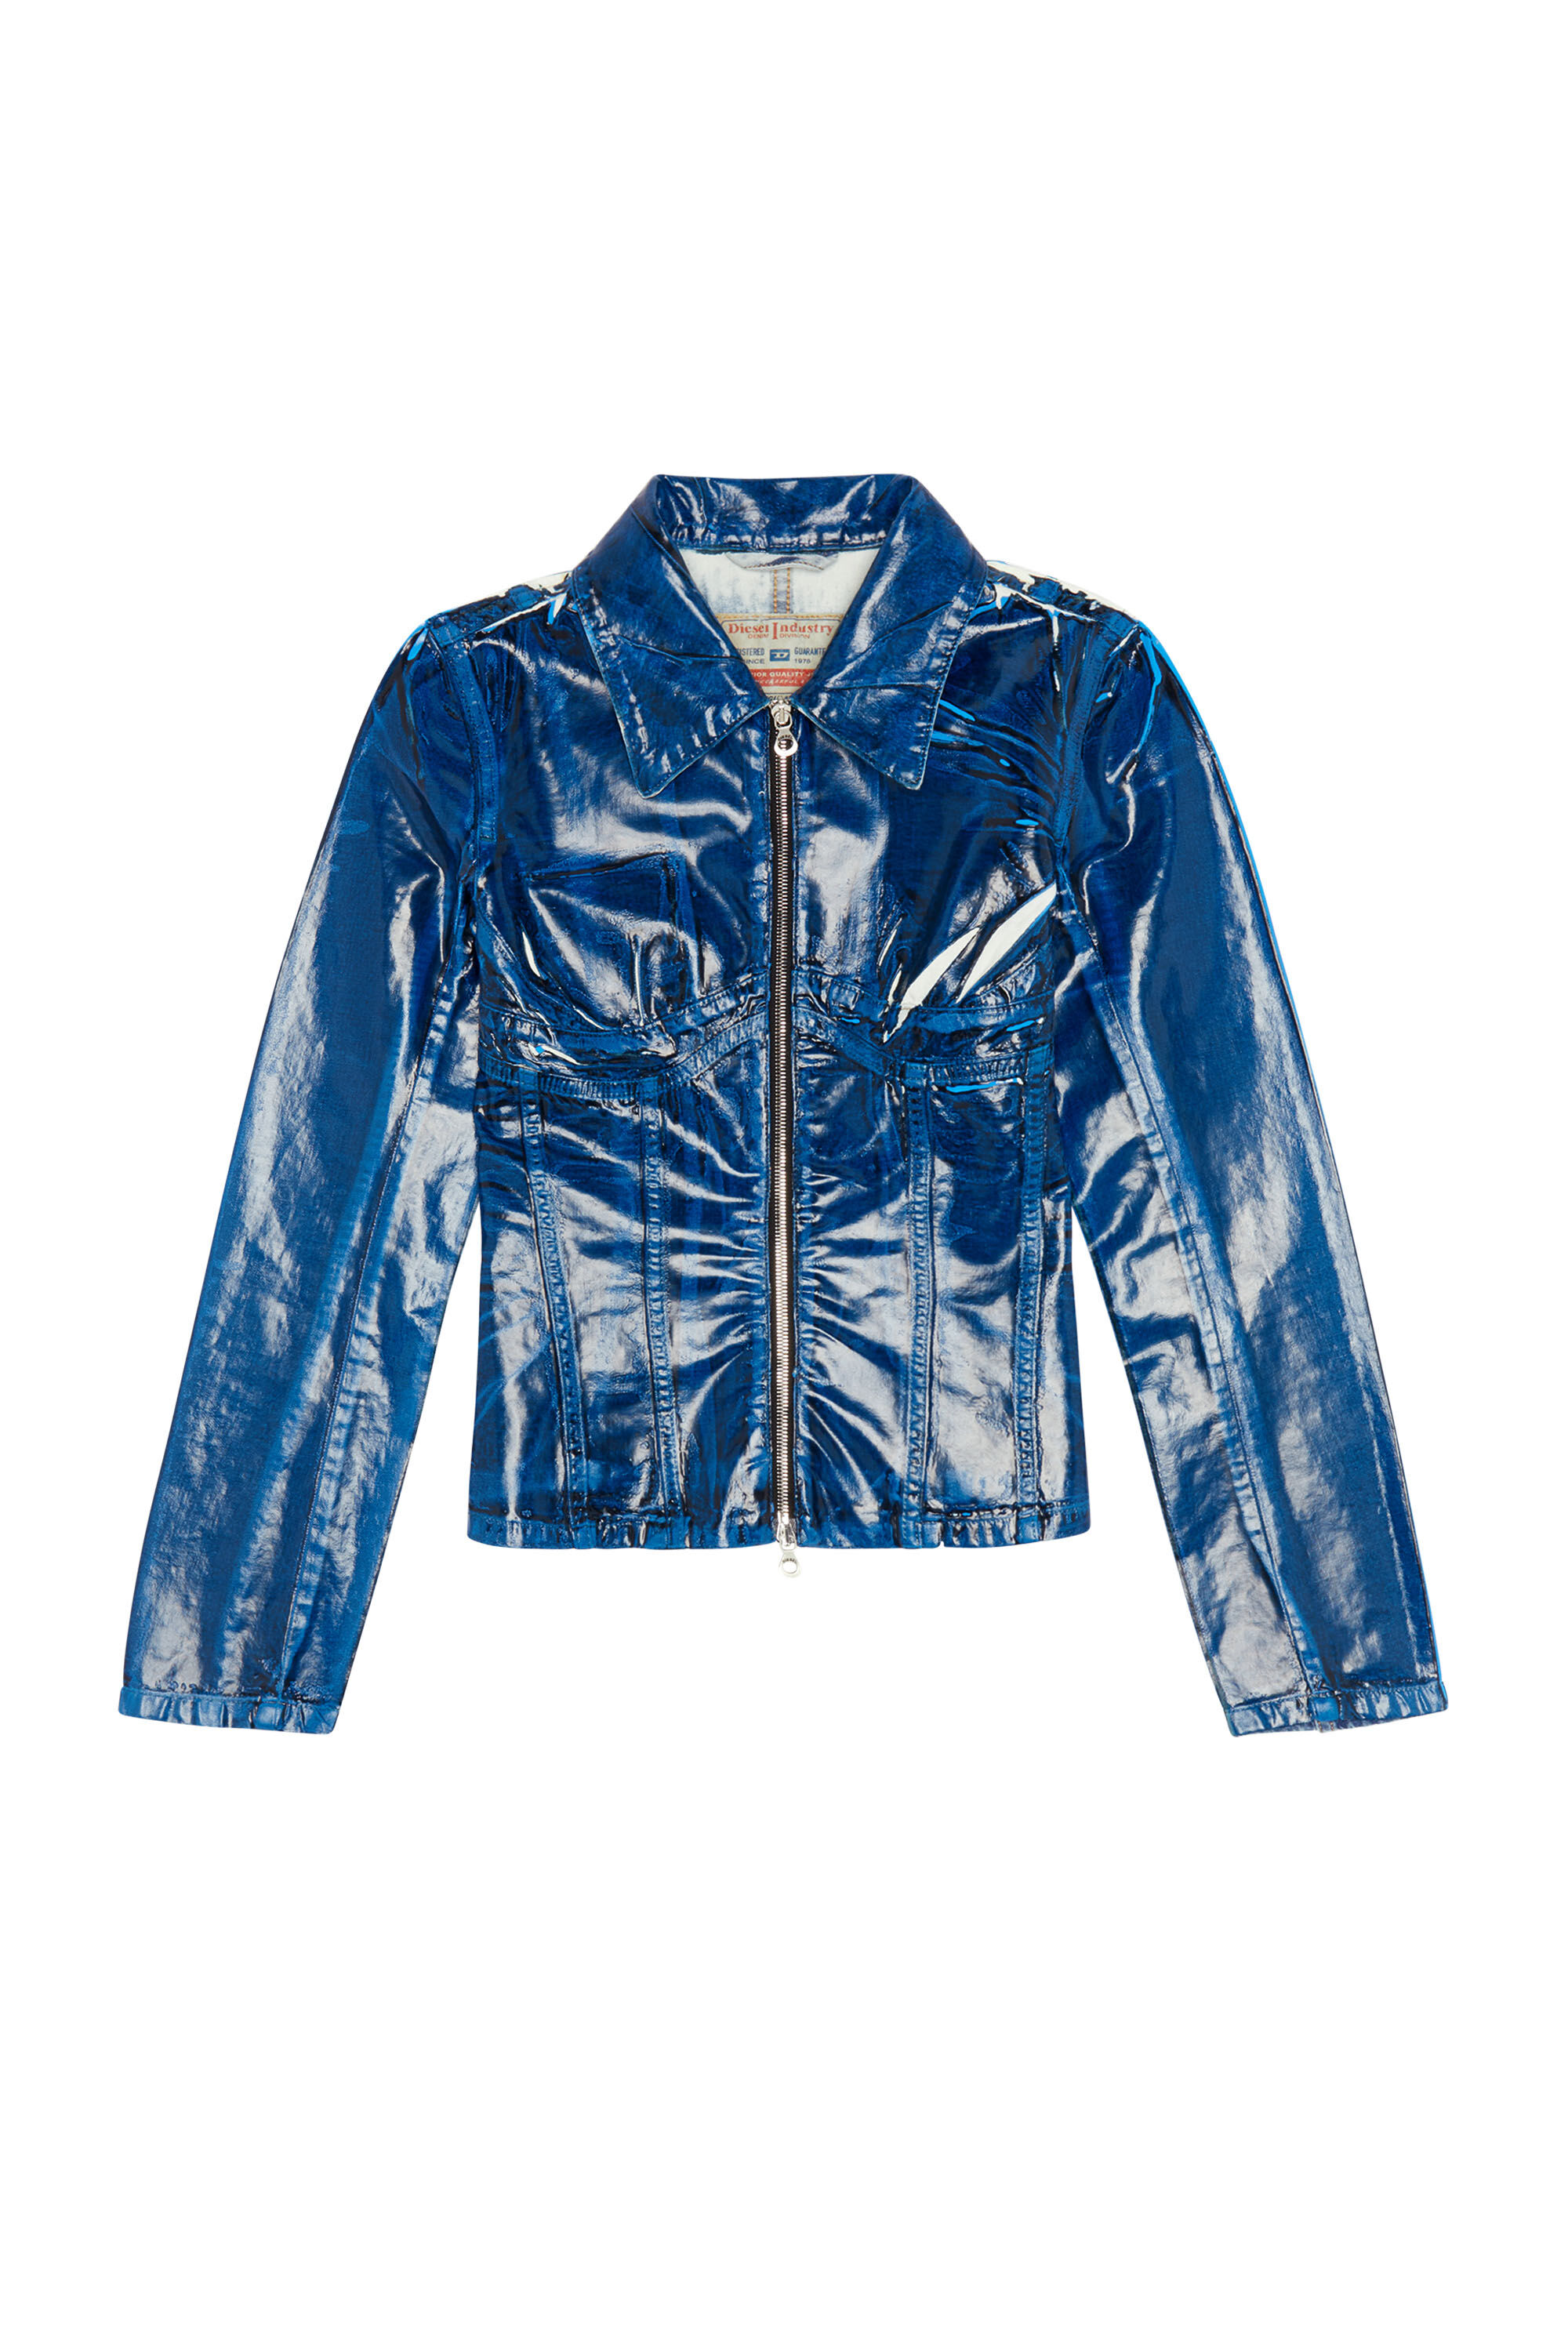 DE-MILLY-FSC Woman: Slim-fit resin-coated trucker jacket | Diesel